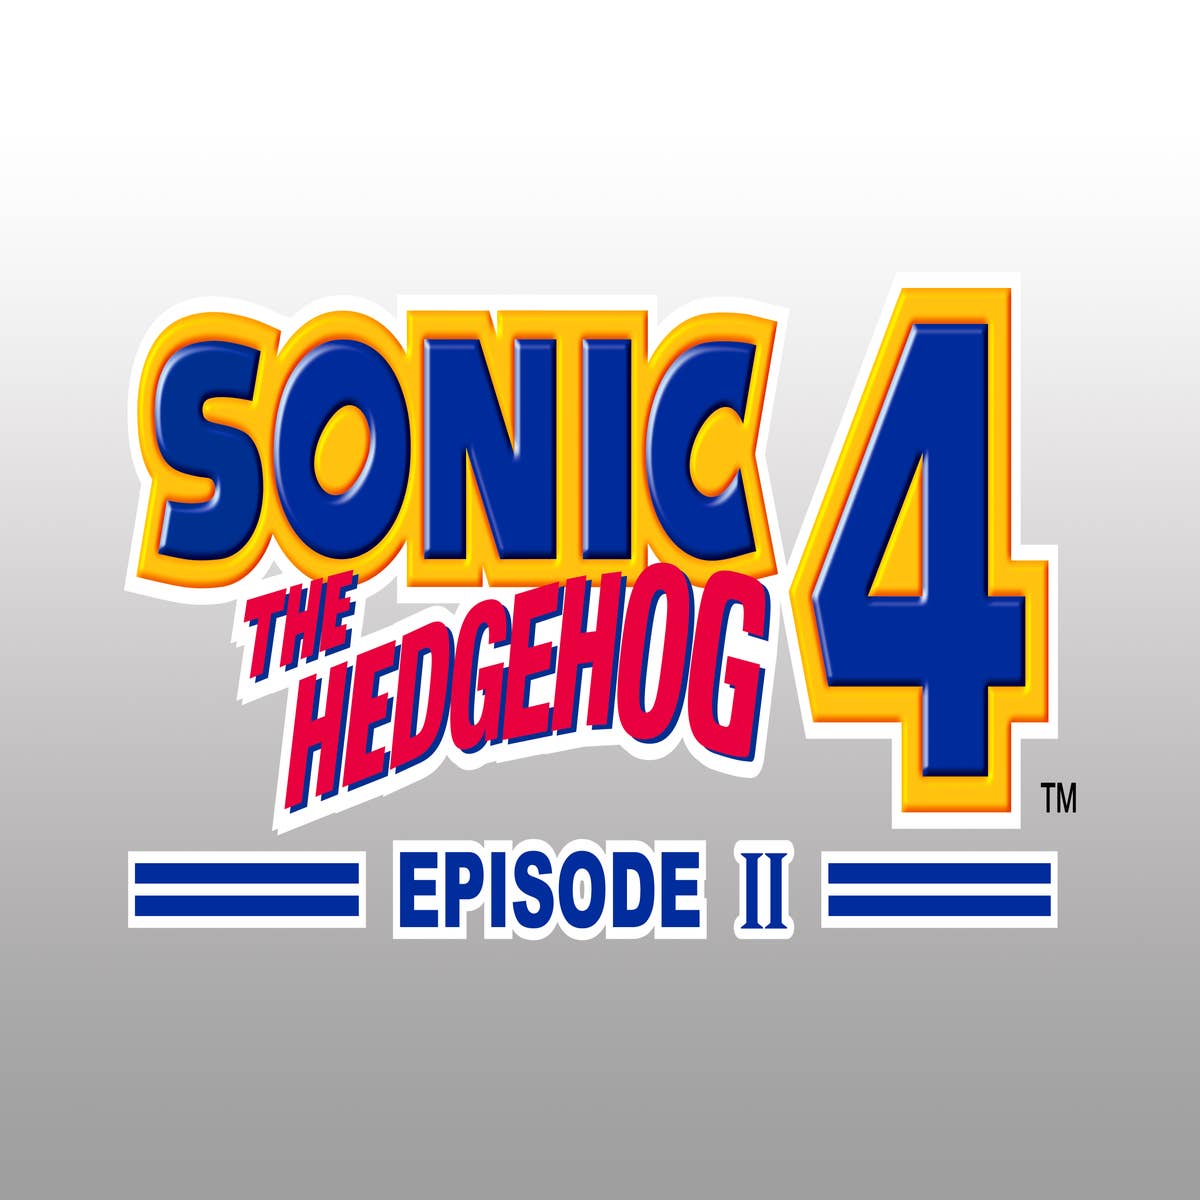 Sonic the Hedgehog 4 Episode I